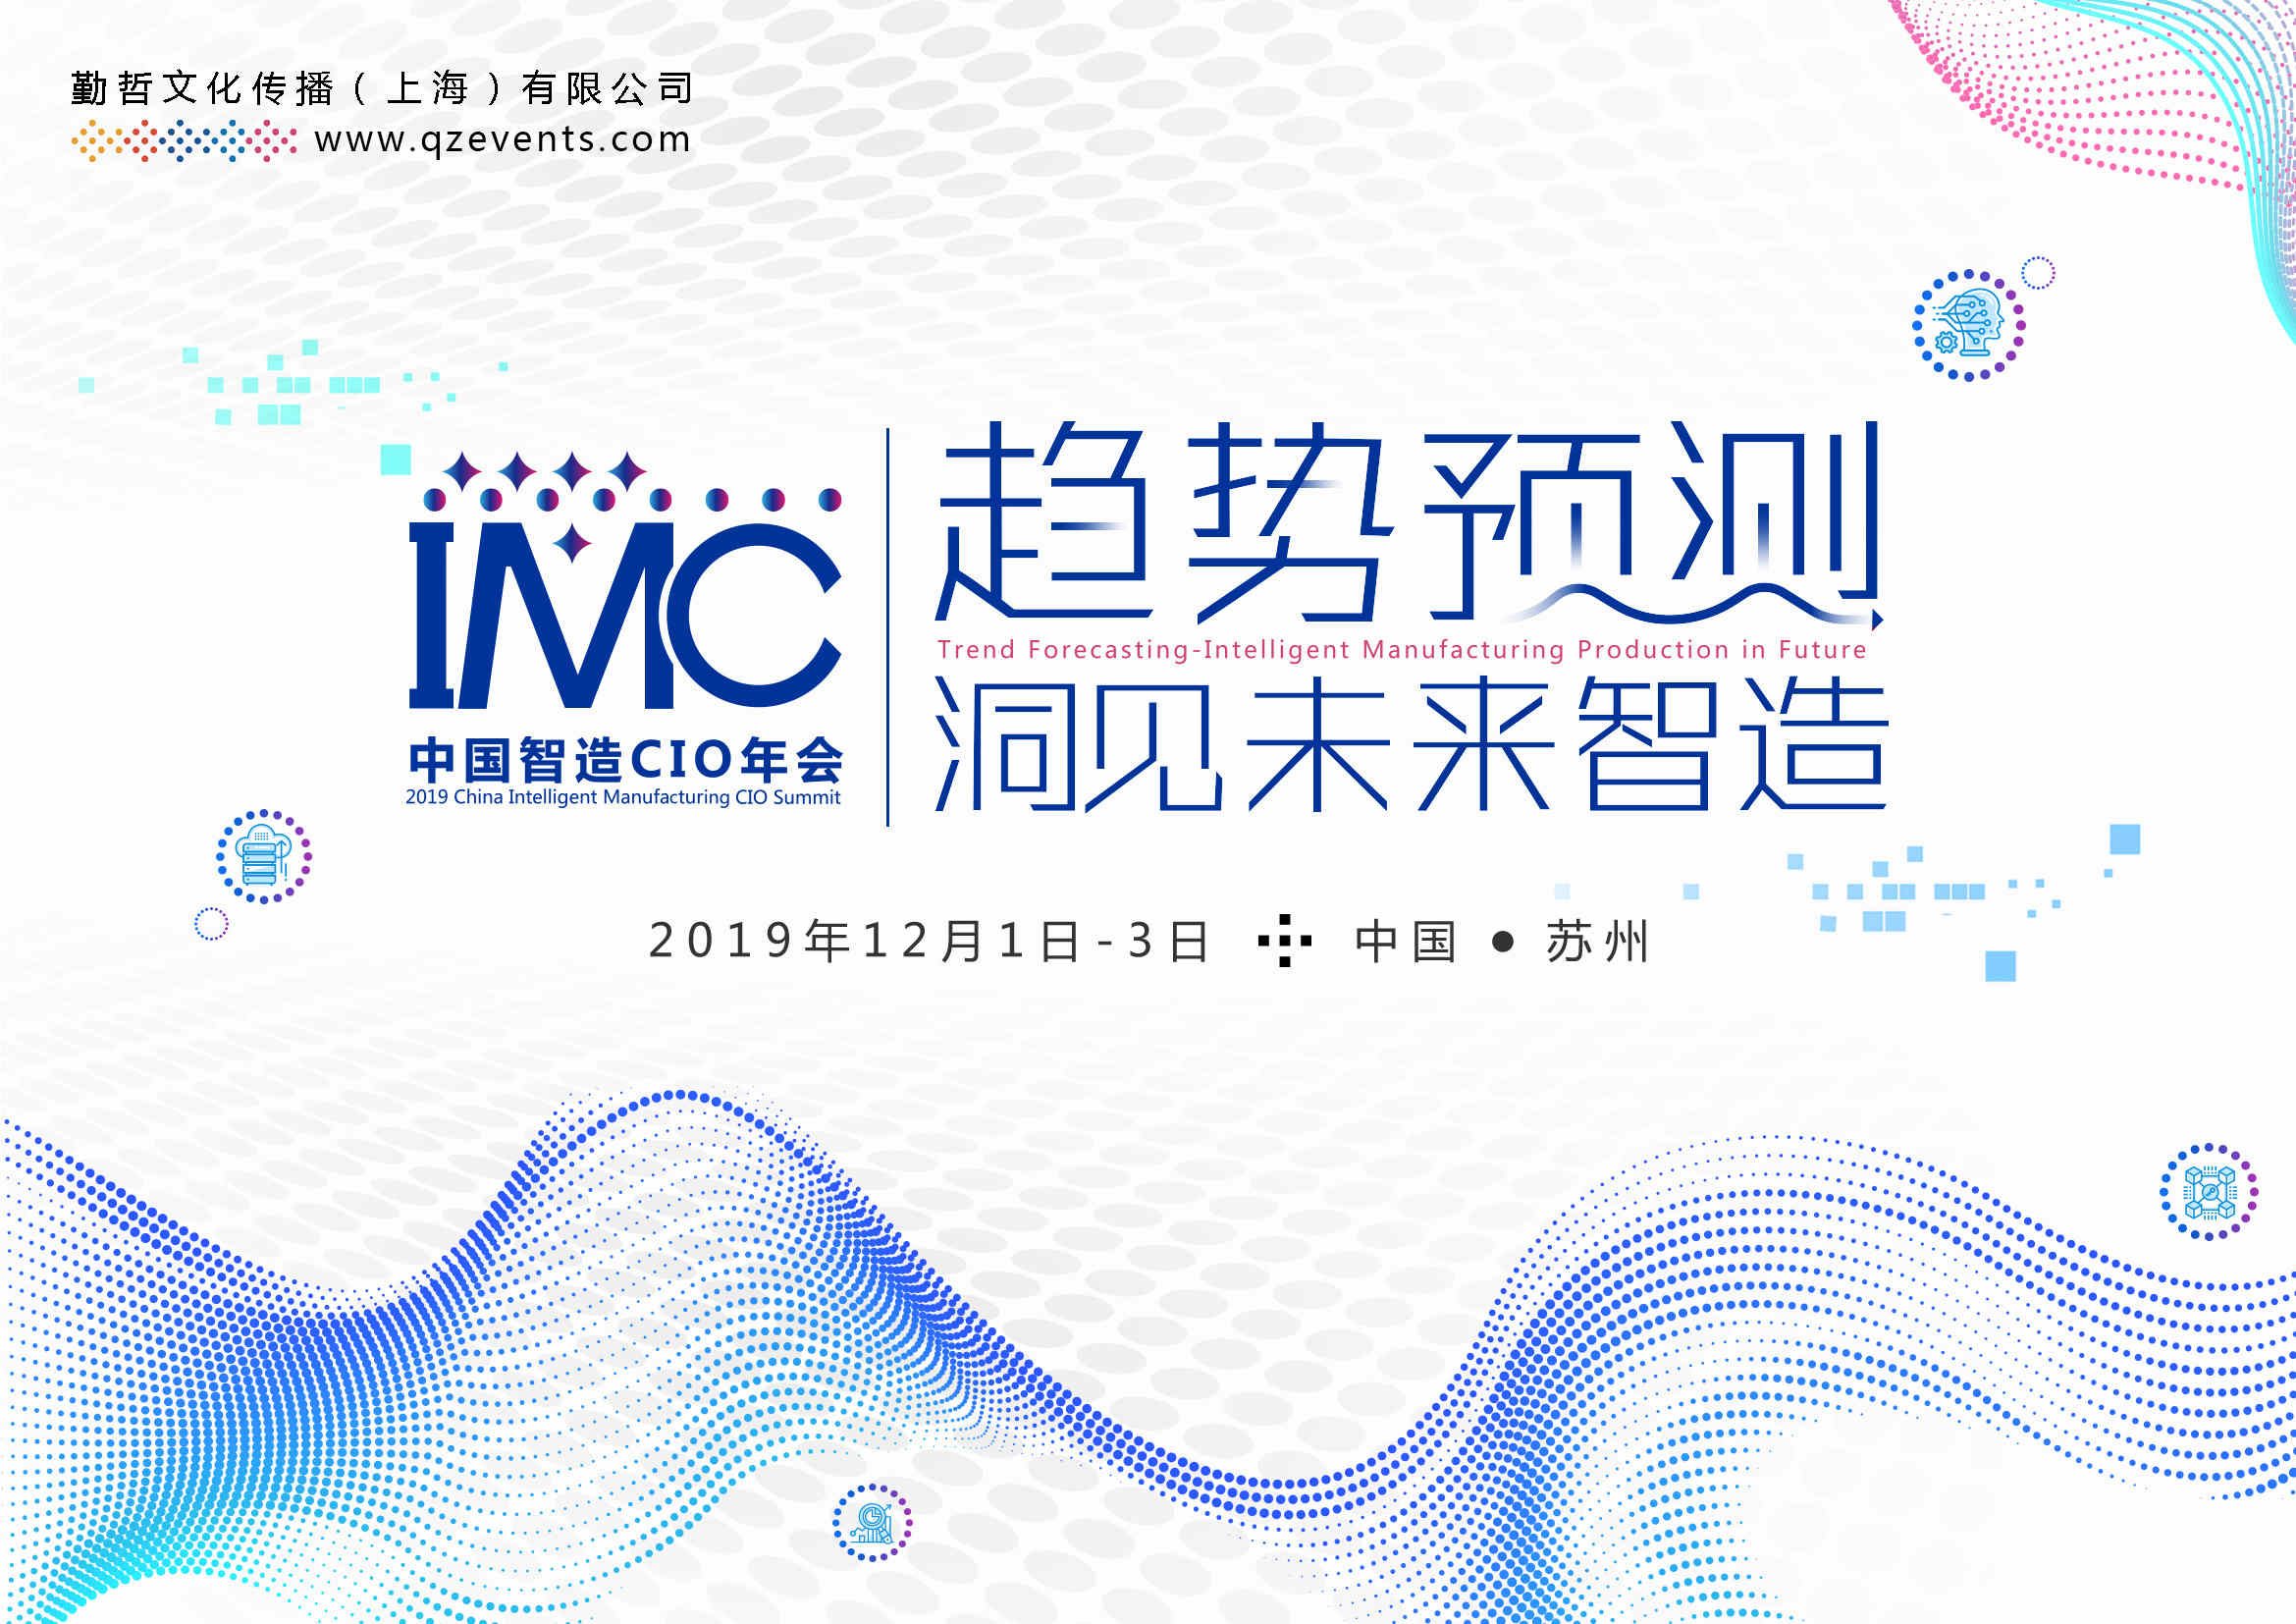 IMC 2019中国智造CIO年会 文案_Page_01